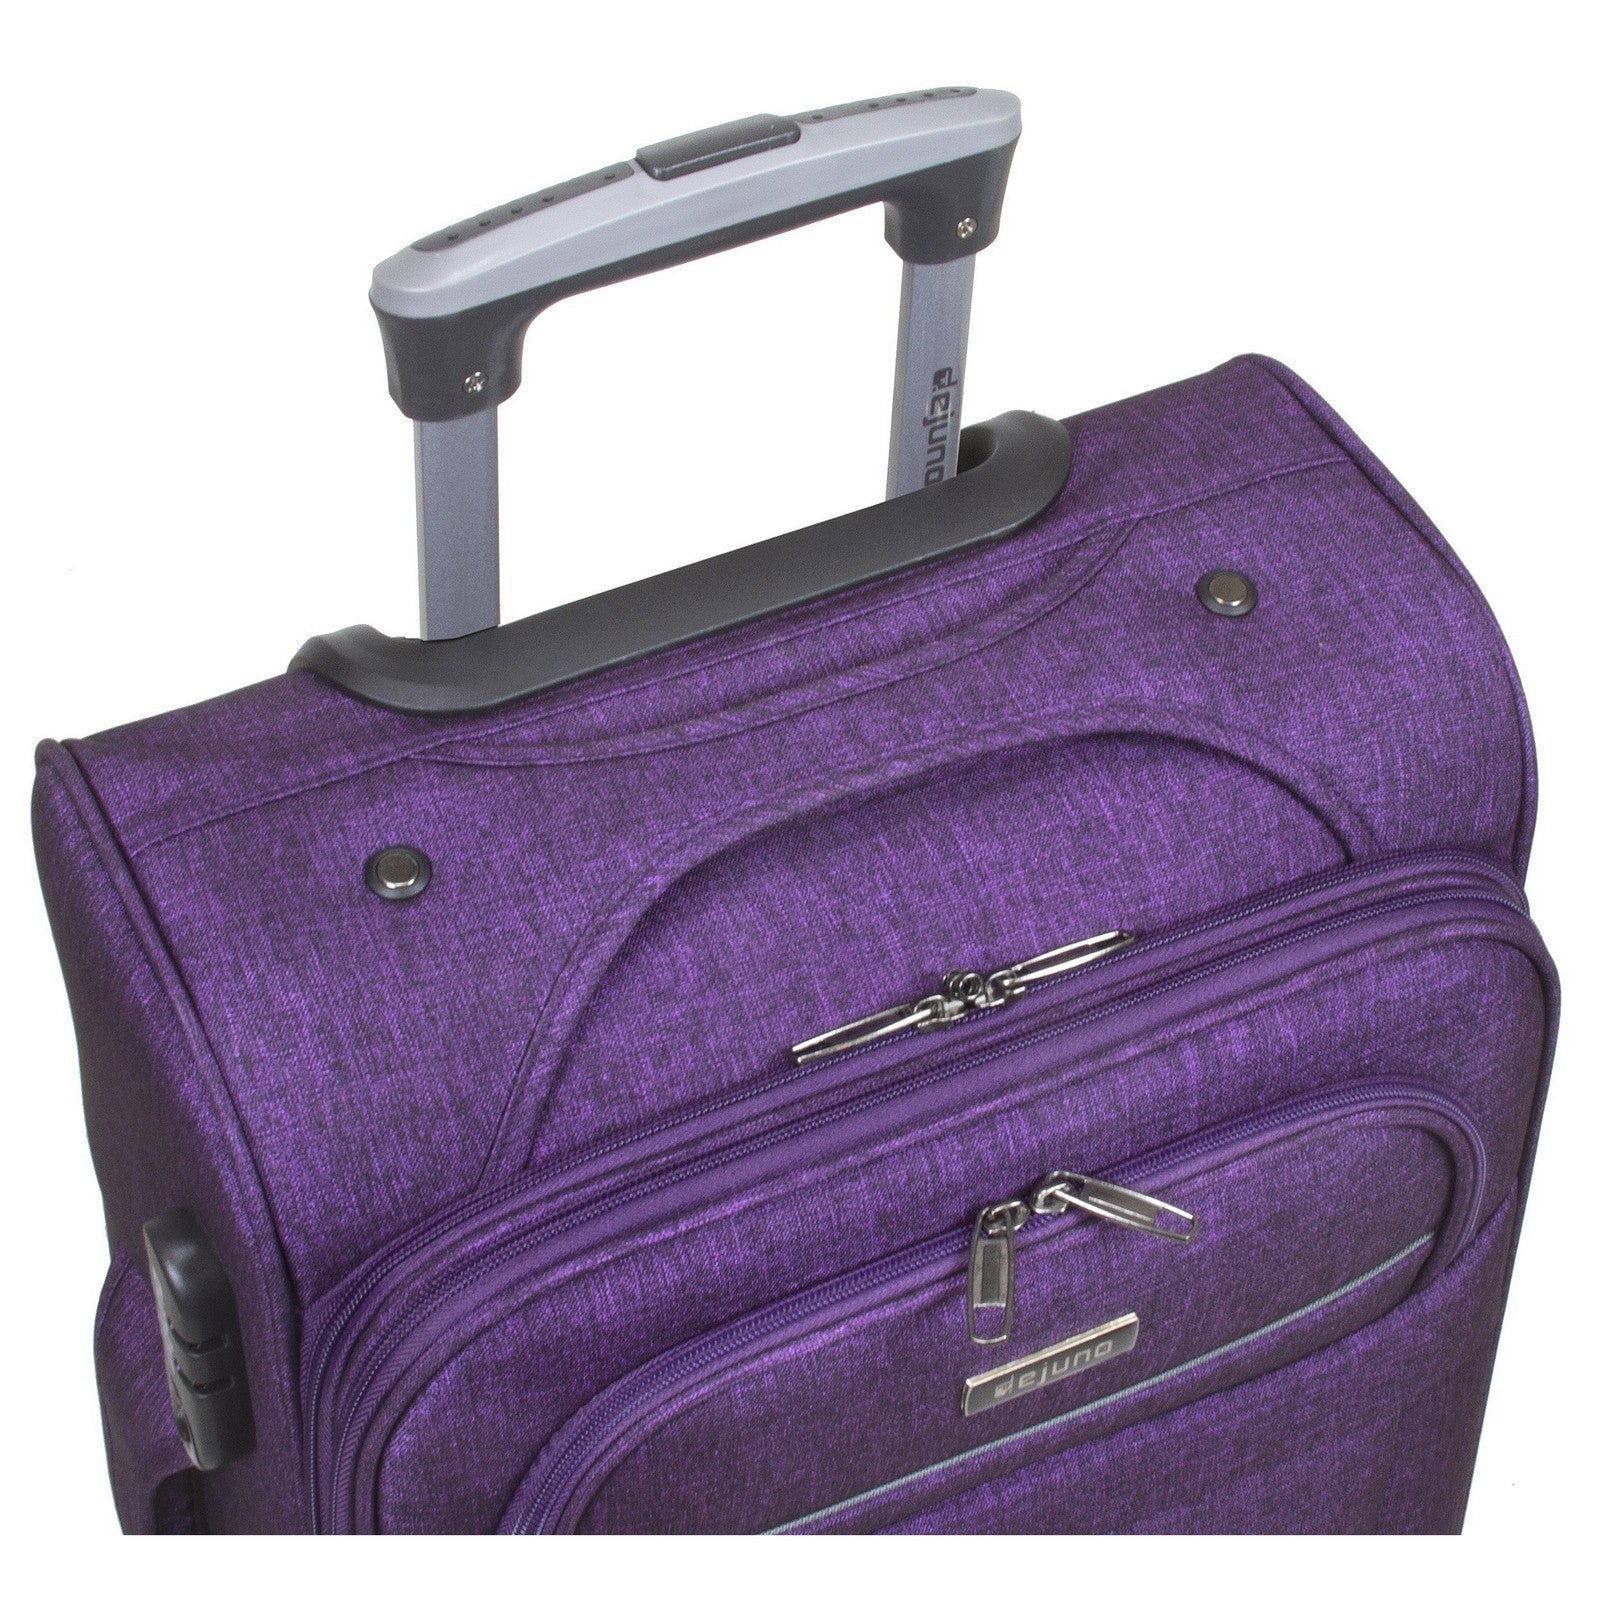 Dejuno Aurora Lightweight Denim 3-Piece Spinner Luggage Set